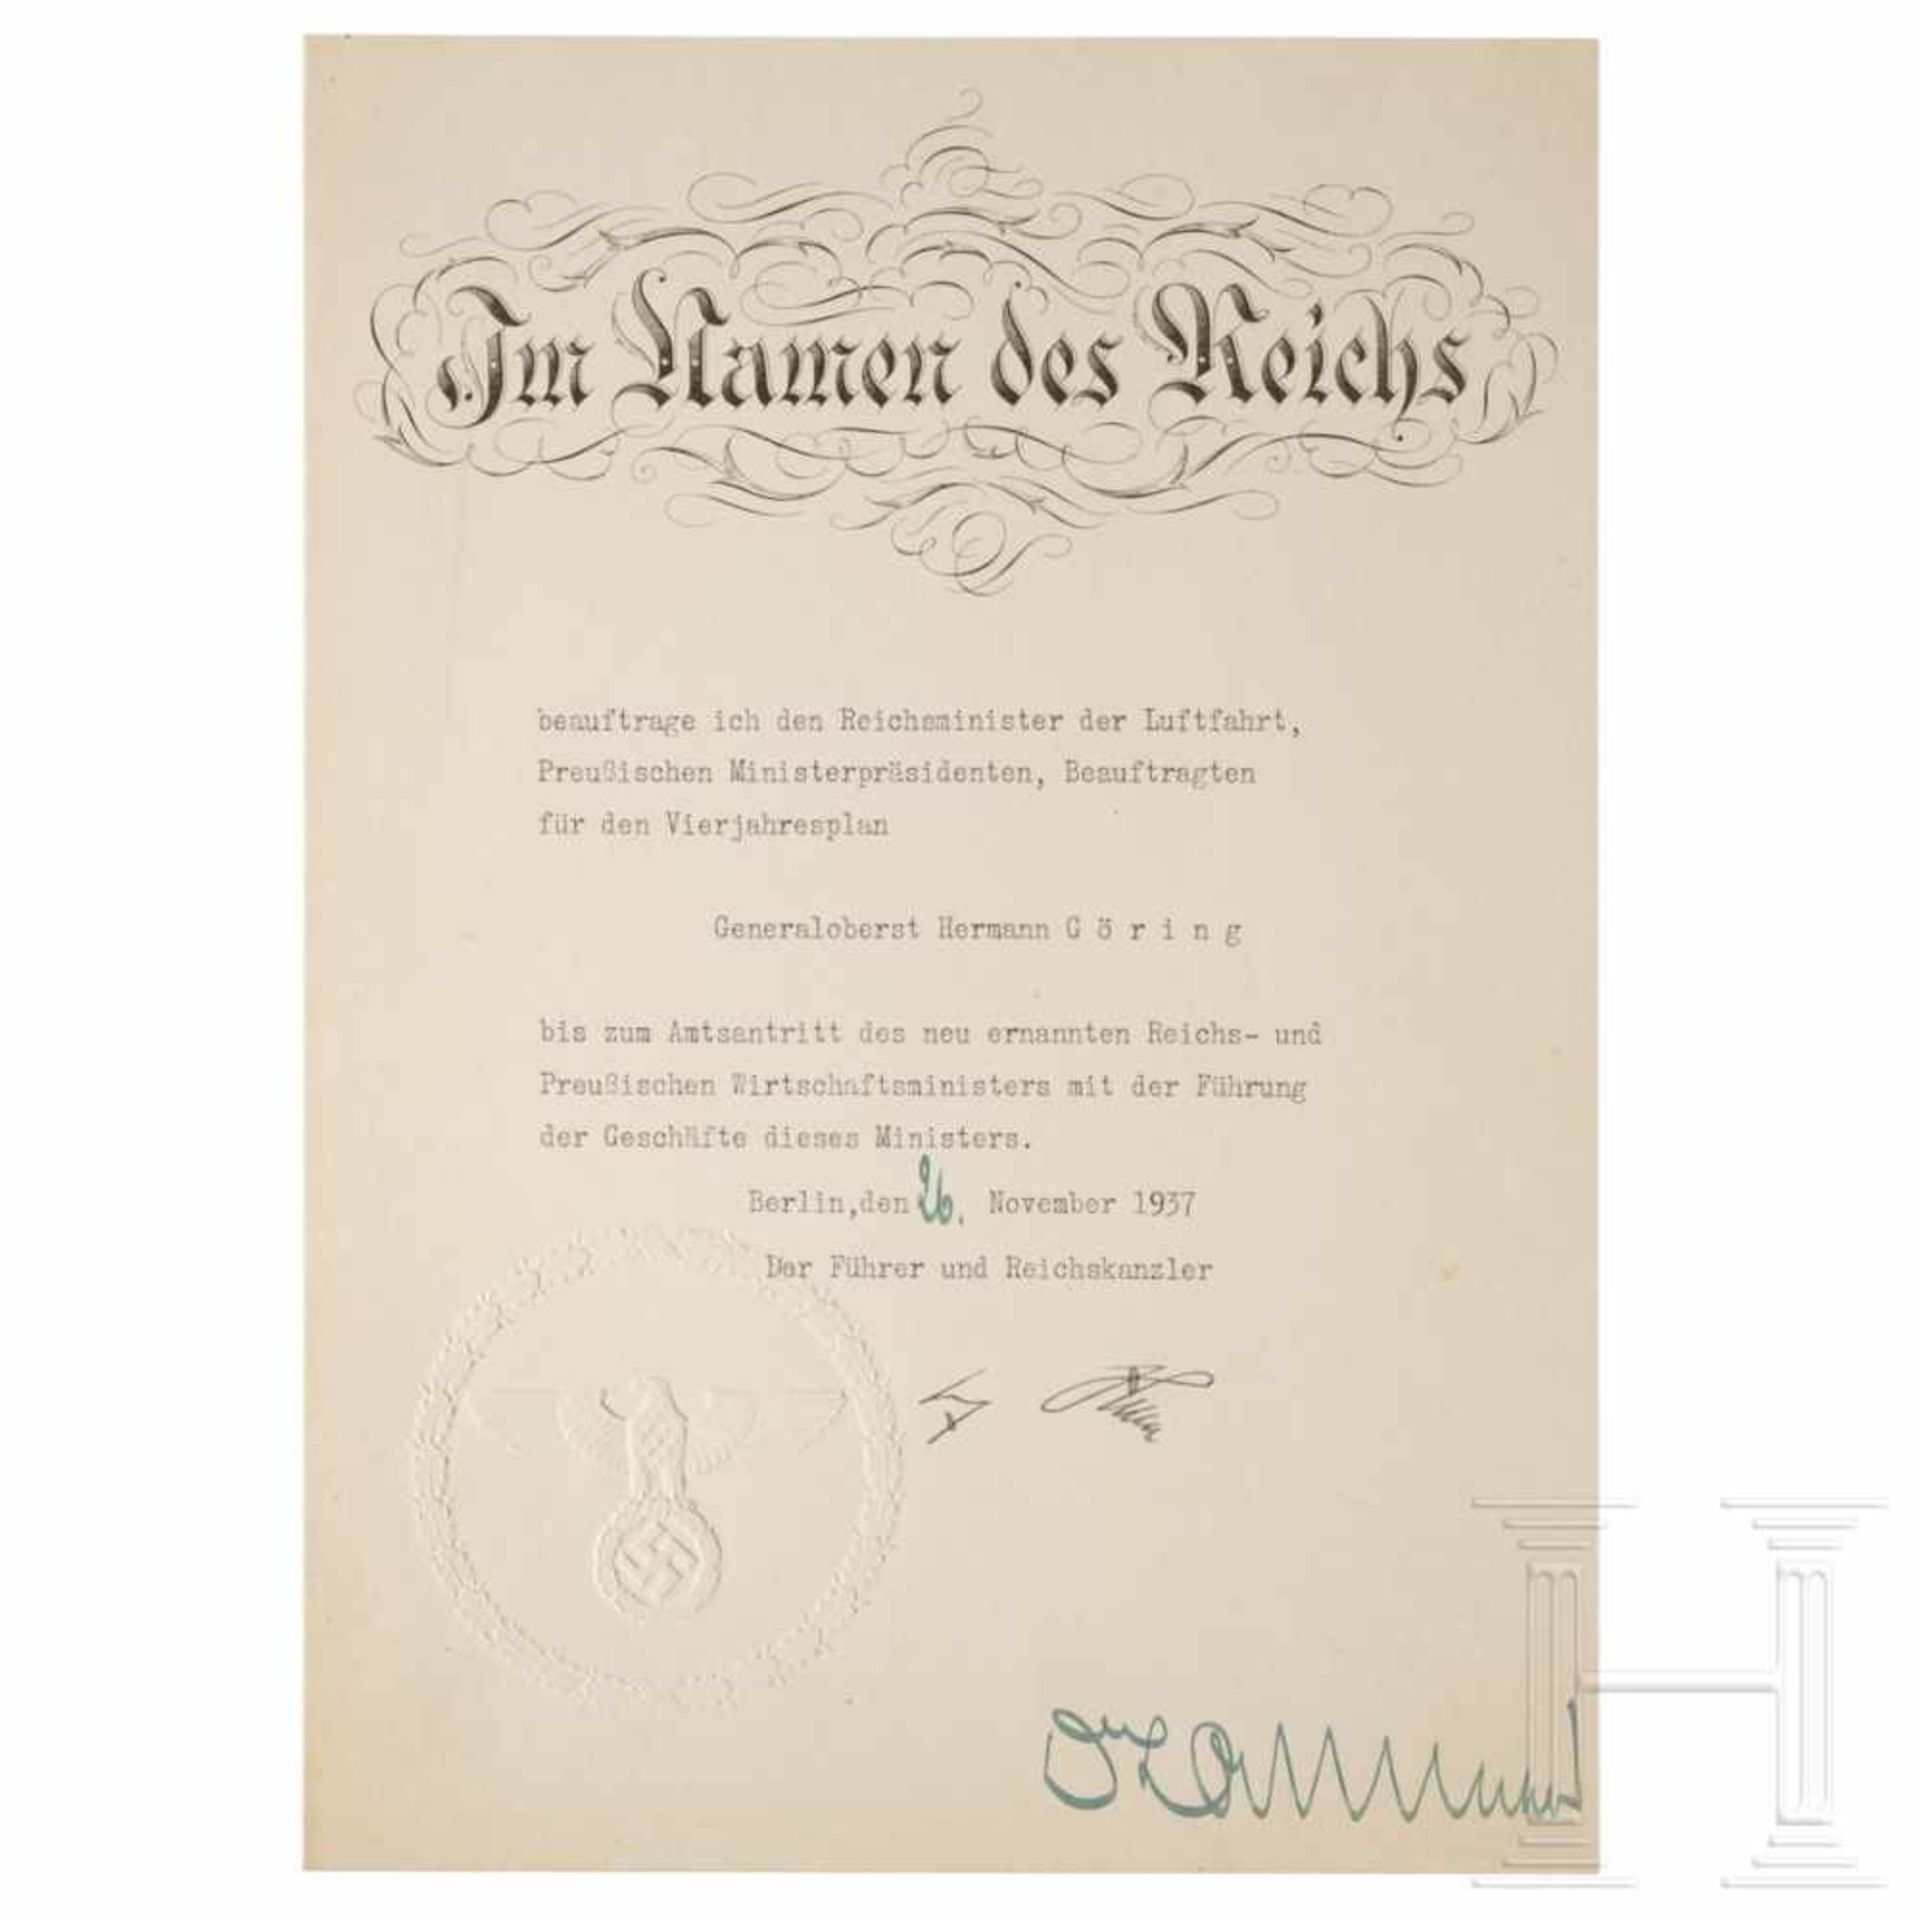 Urkunde Hitlers mit der Beauftragung Görings mit der Führung der Geschäfte des Preußischen